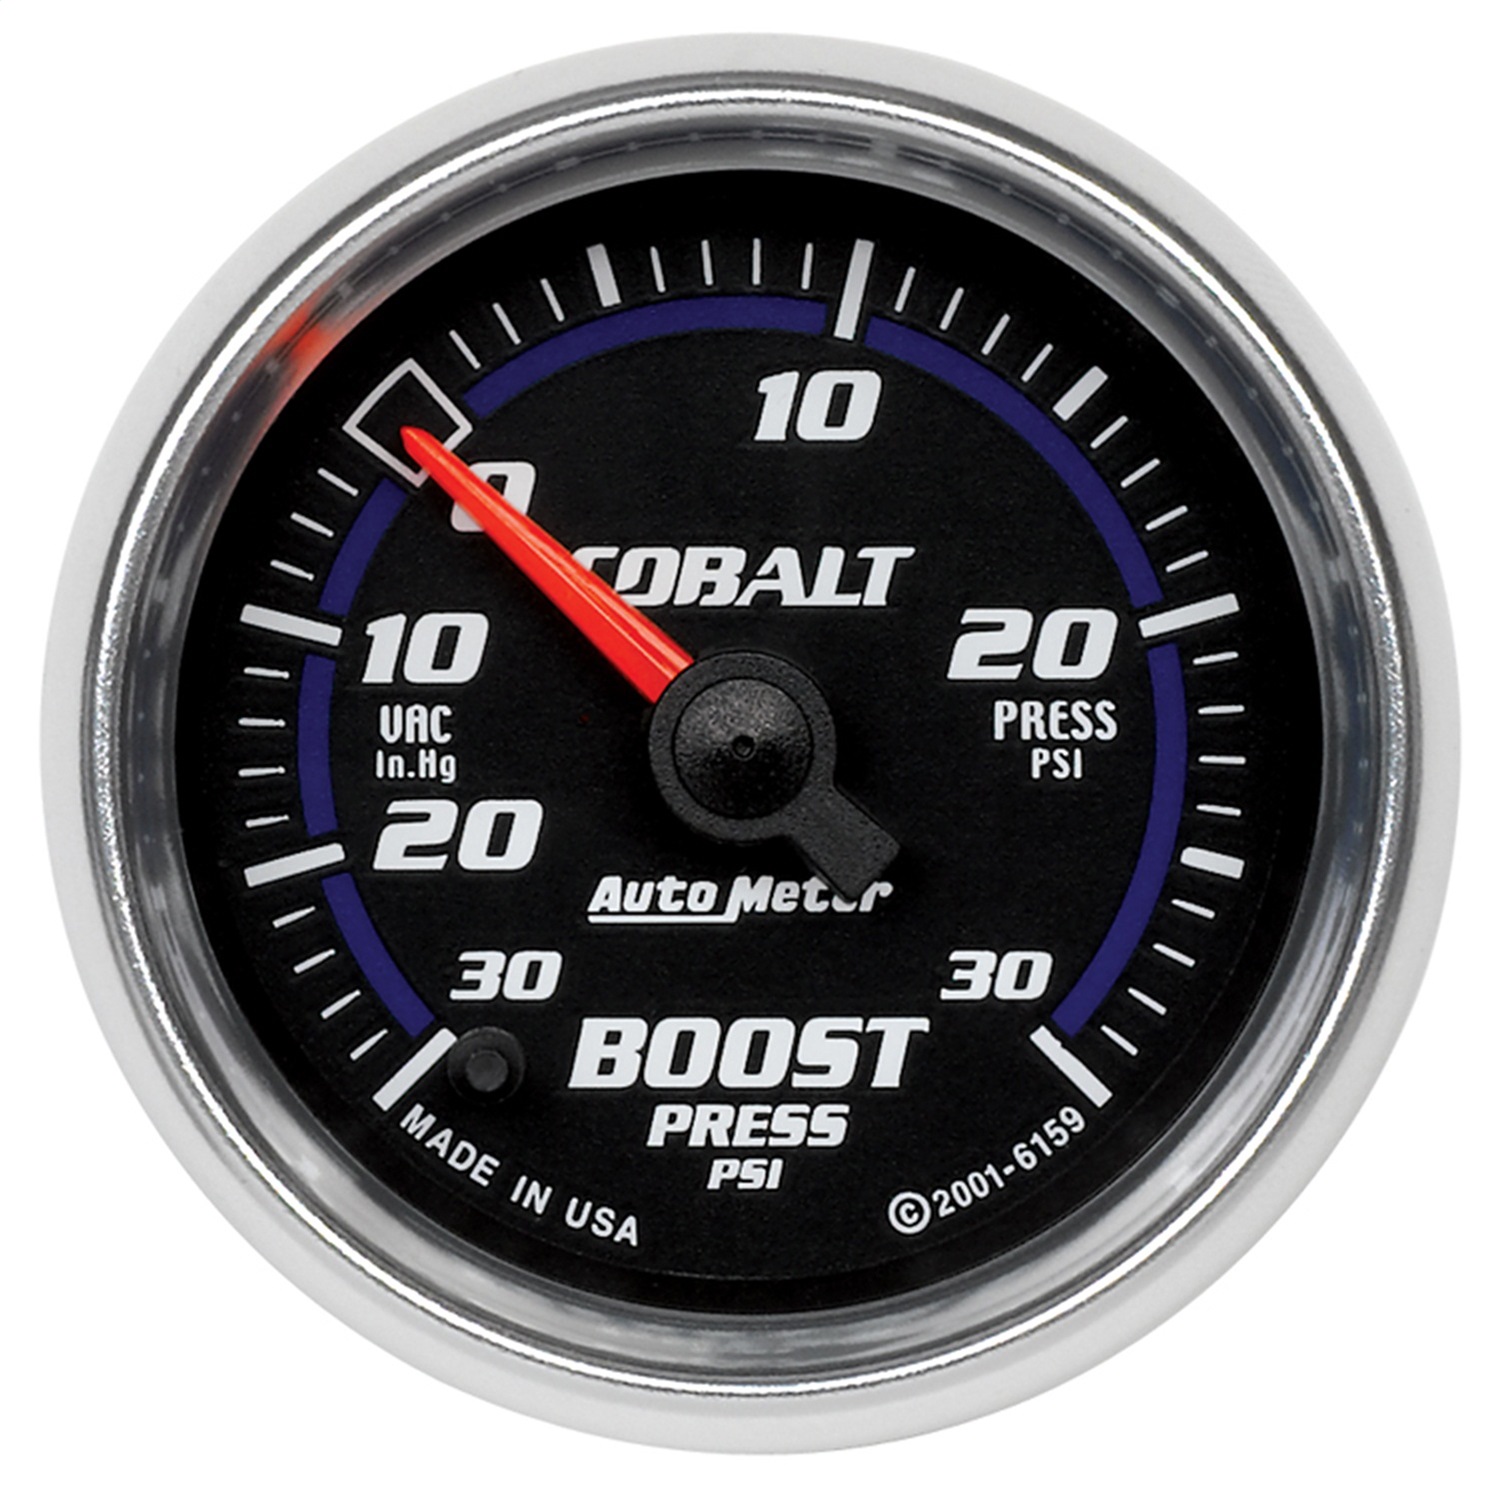 Auto Meter Auto Meter 6159 Cobalt; Electric Boost/Vacuum Gauge